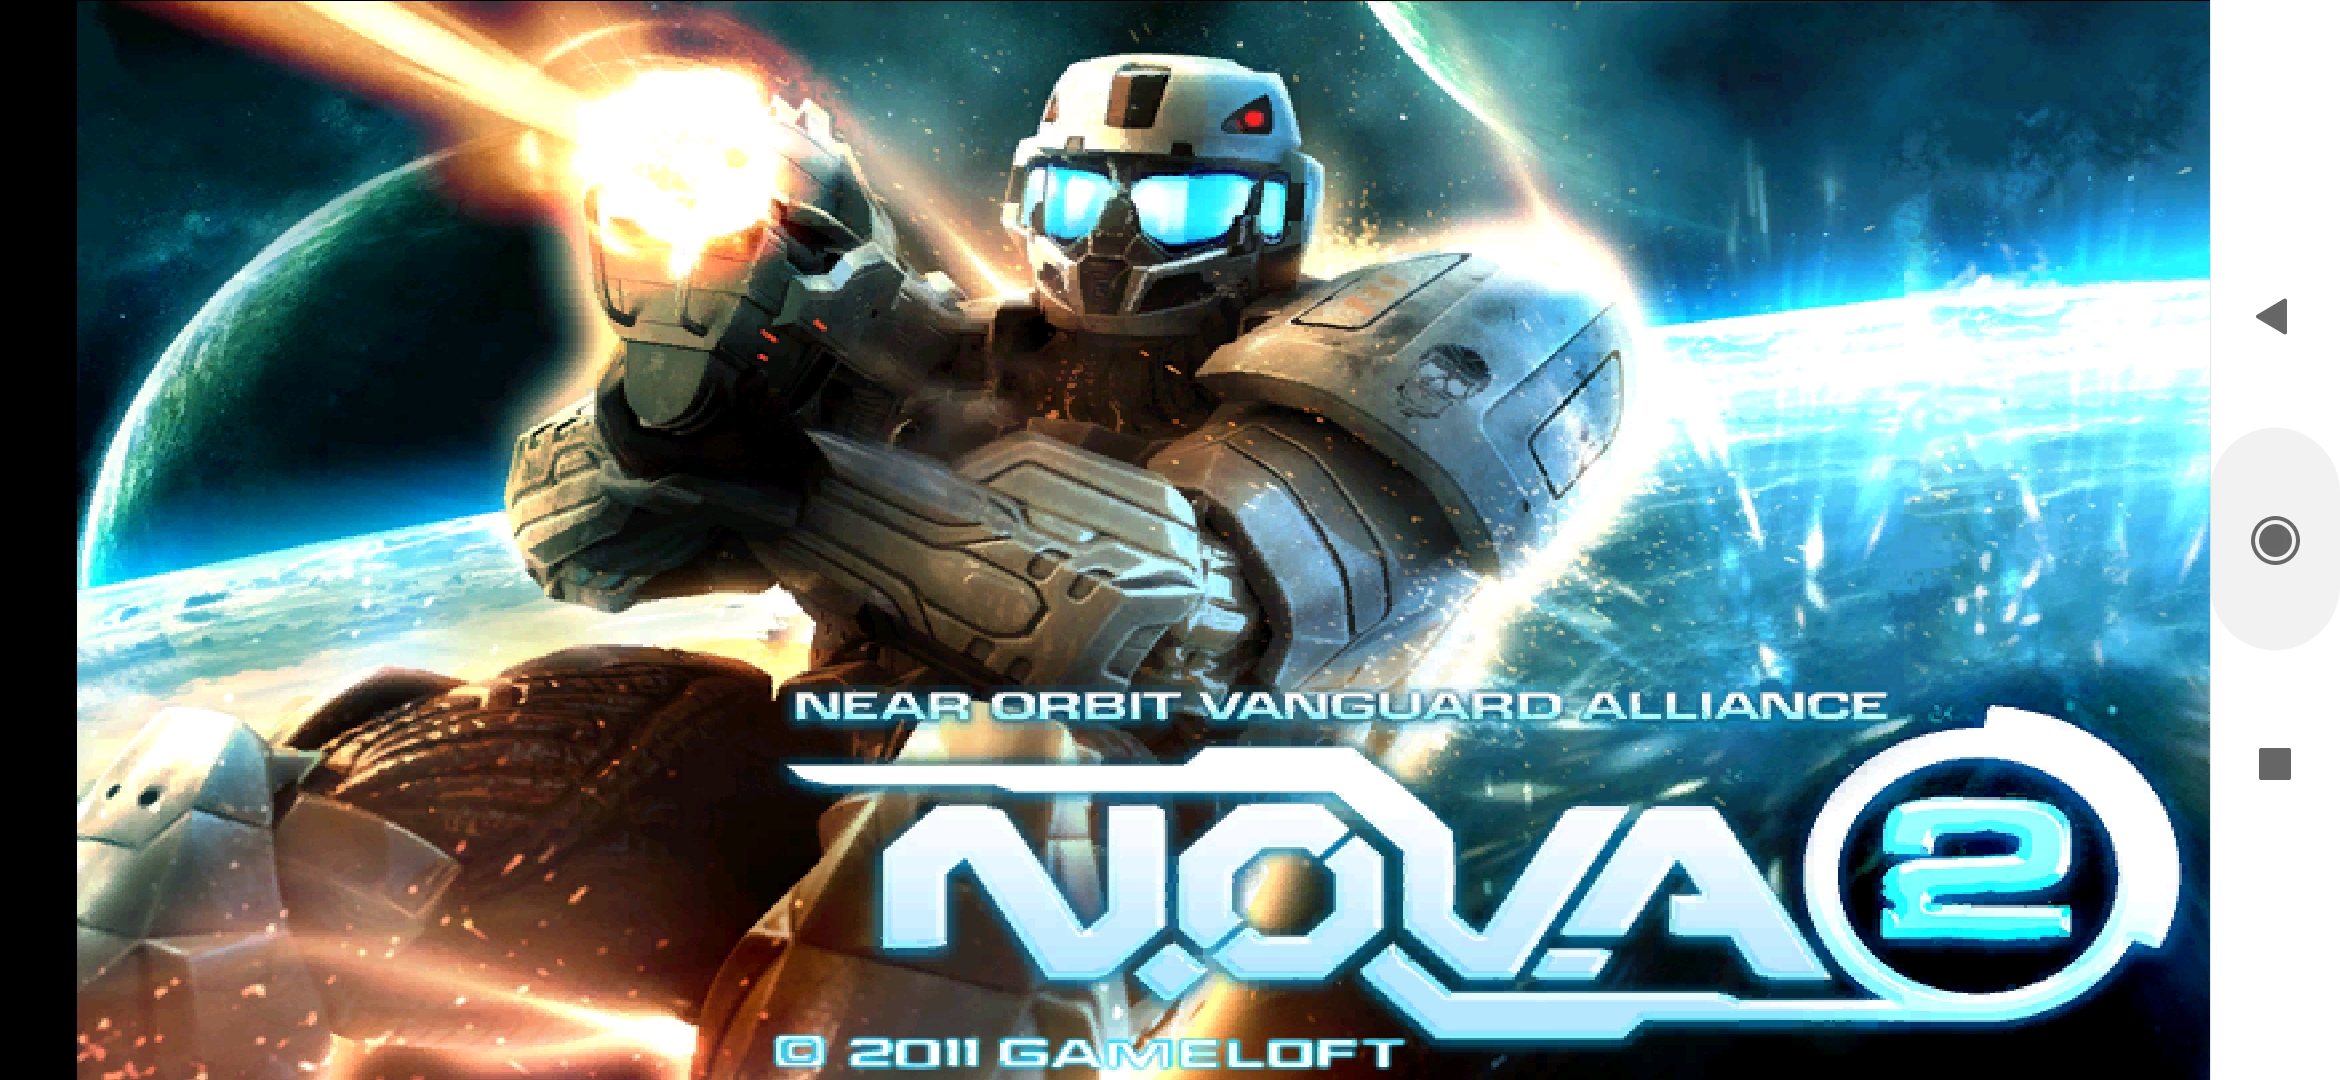 Соединяй и получай новые игры. N.O.V.A. 2: near Orbit Vanguard Alliance. N.O.V.A near Orbit Vanguard Alliance Android. Nova near Orbit Vanguard Alliance Android. Nova 2 игра.